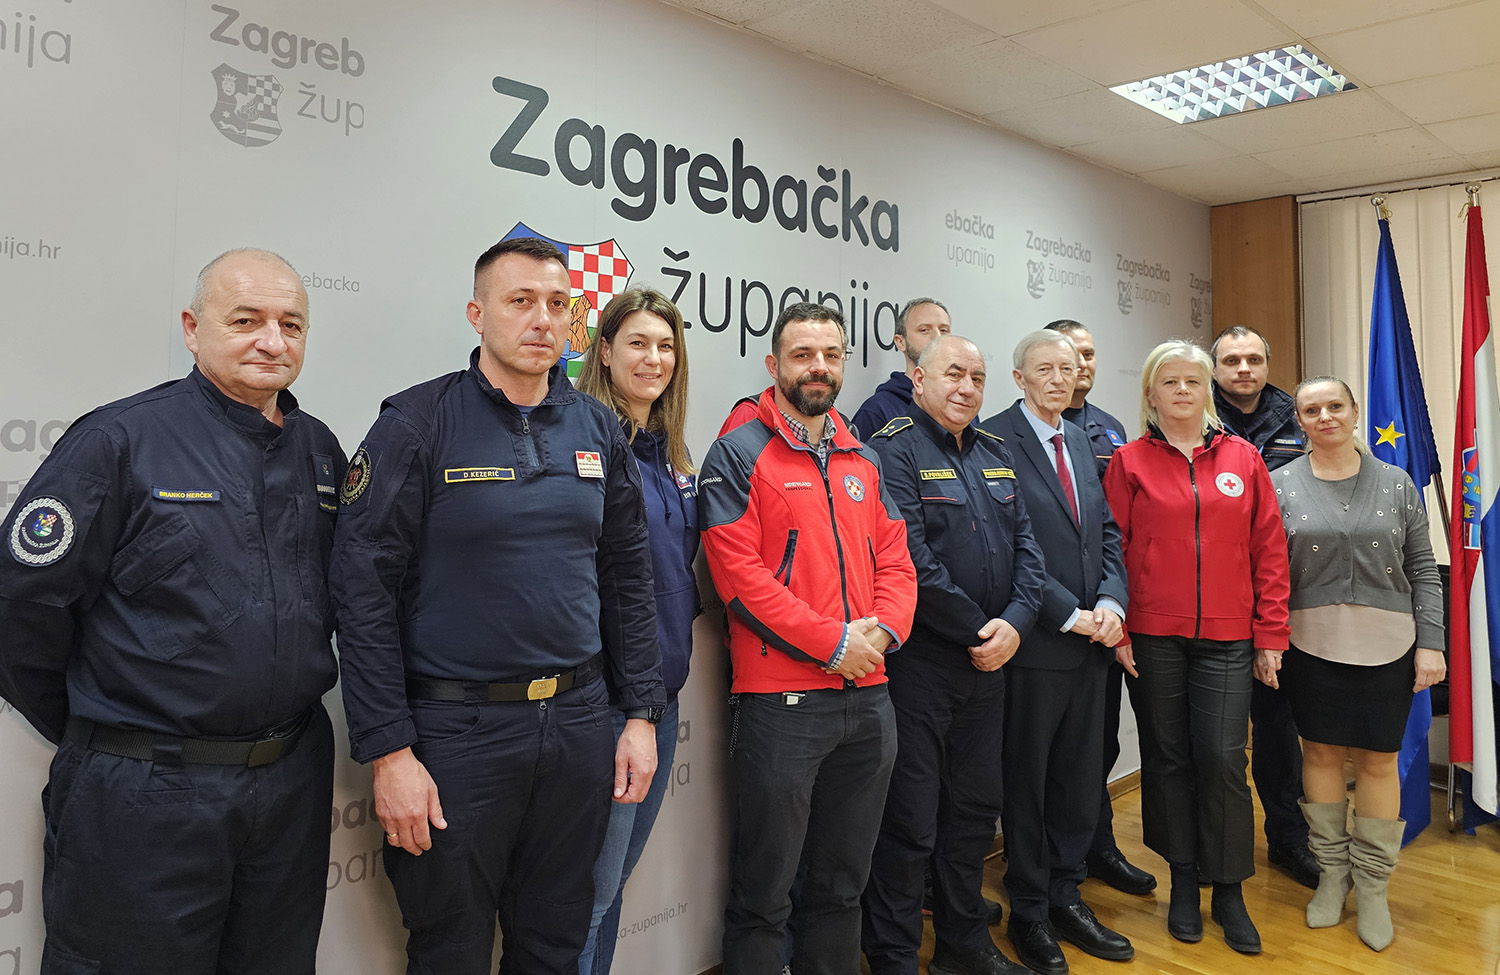 Zagrebačka županija obilježila Dan civilne zaštite 